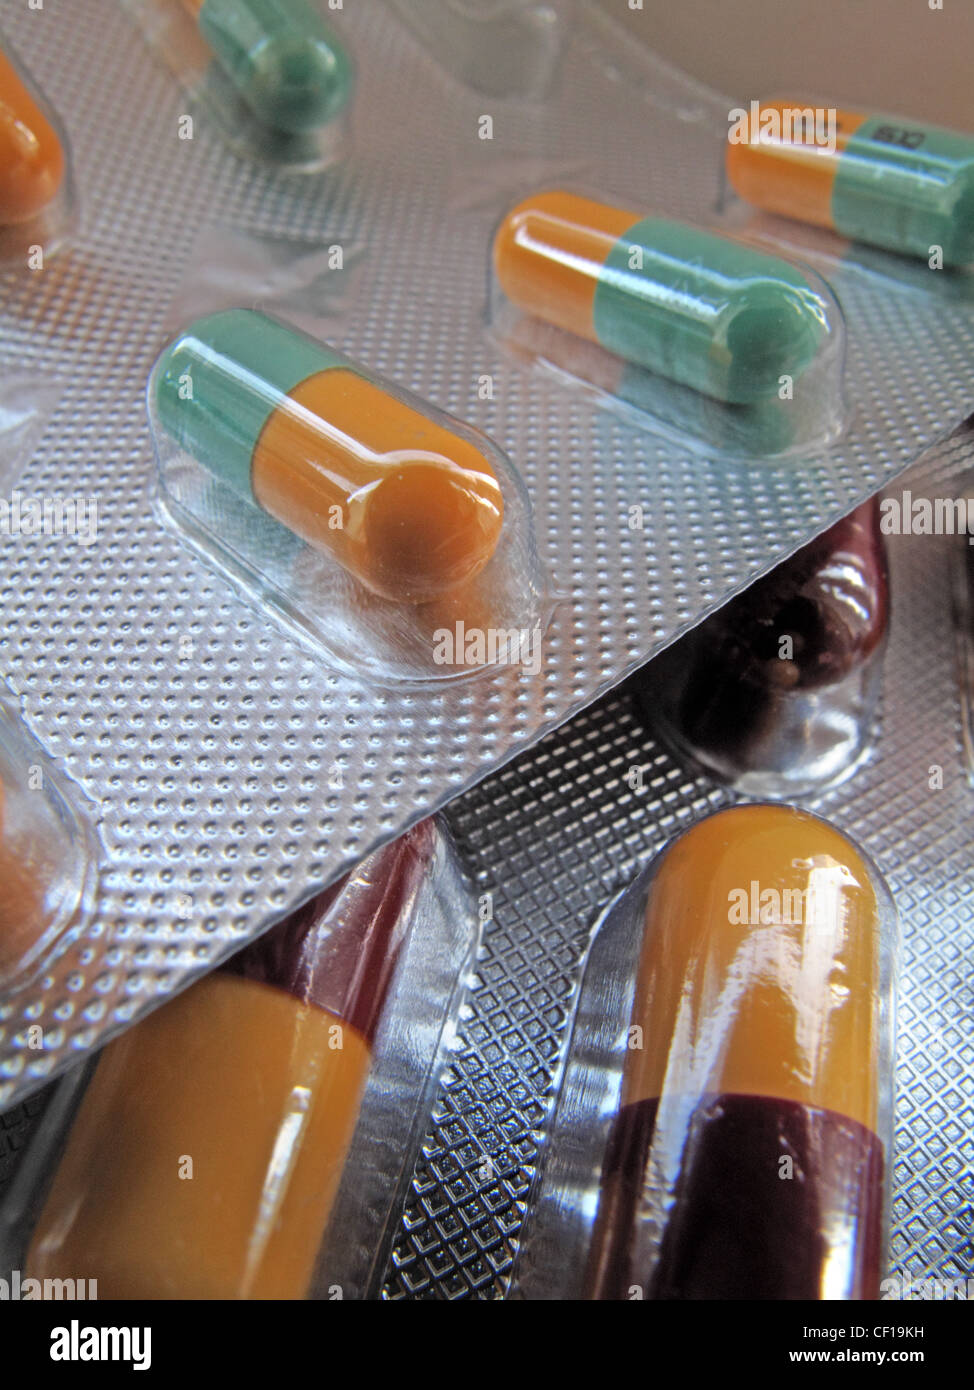 Les capsules en aluminium des médicaments sous blister. Banque D'Images